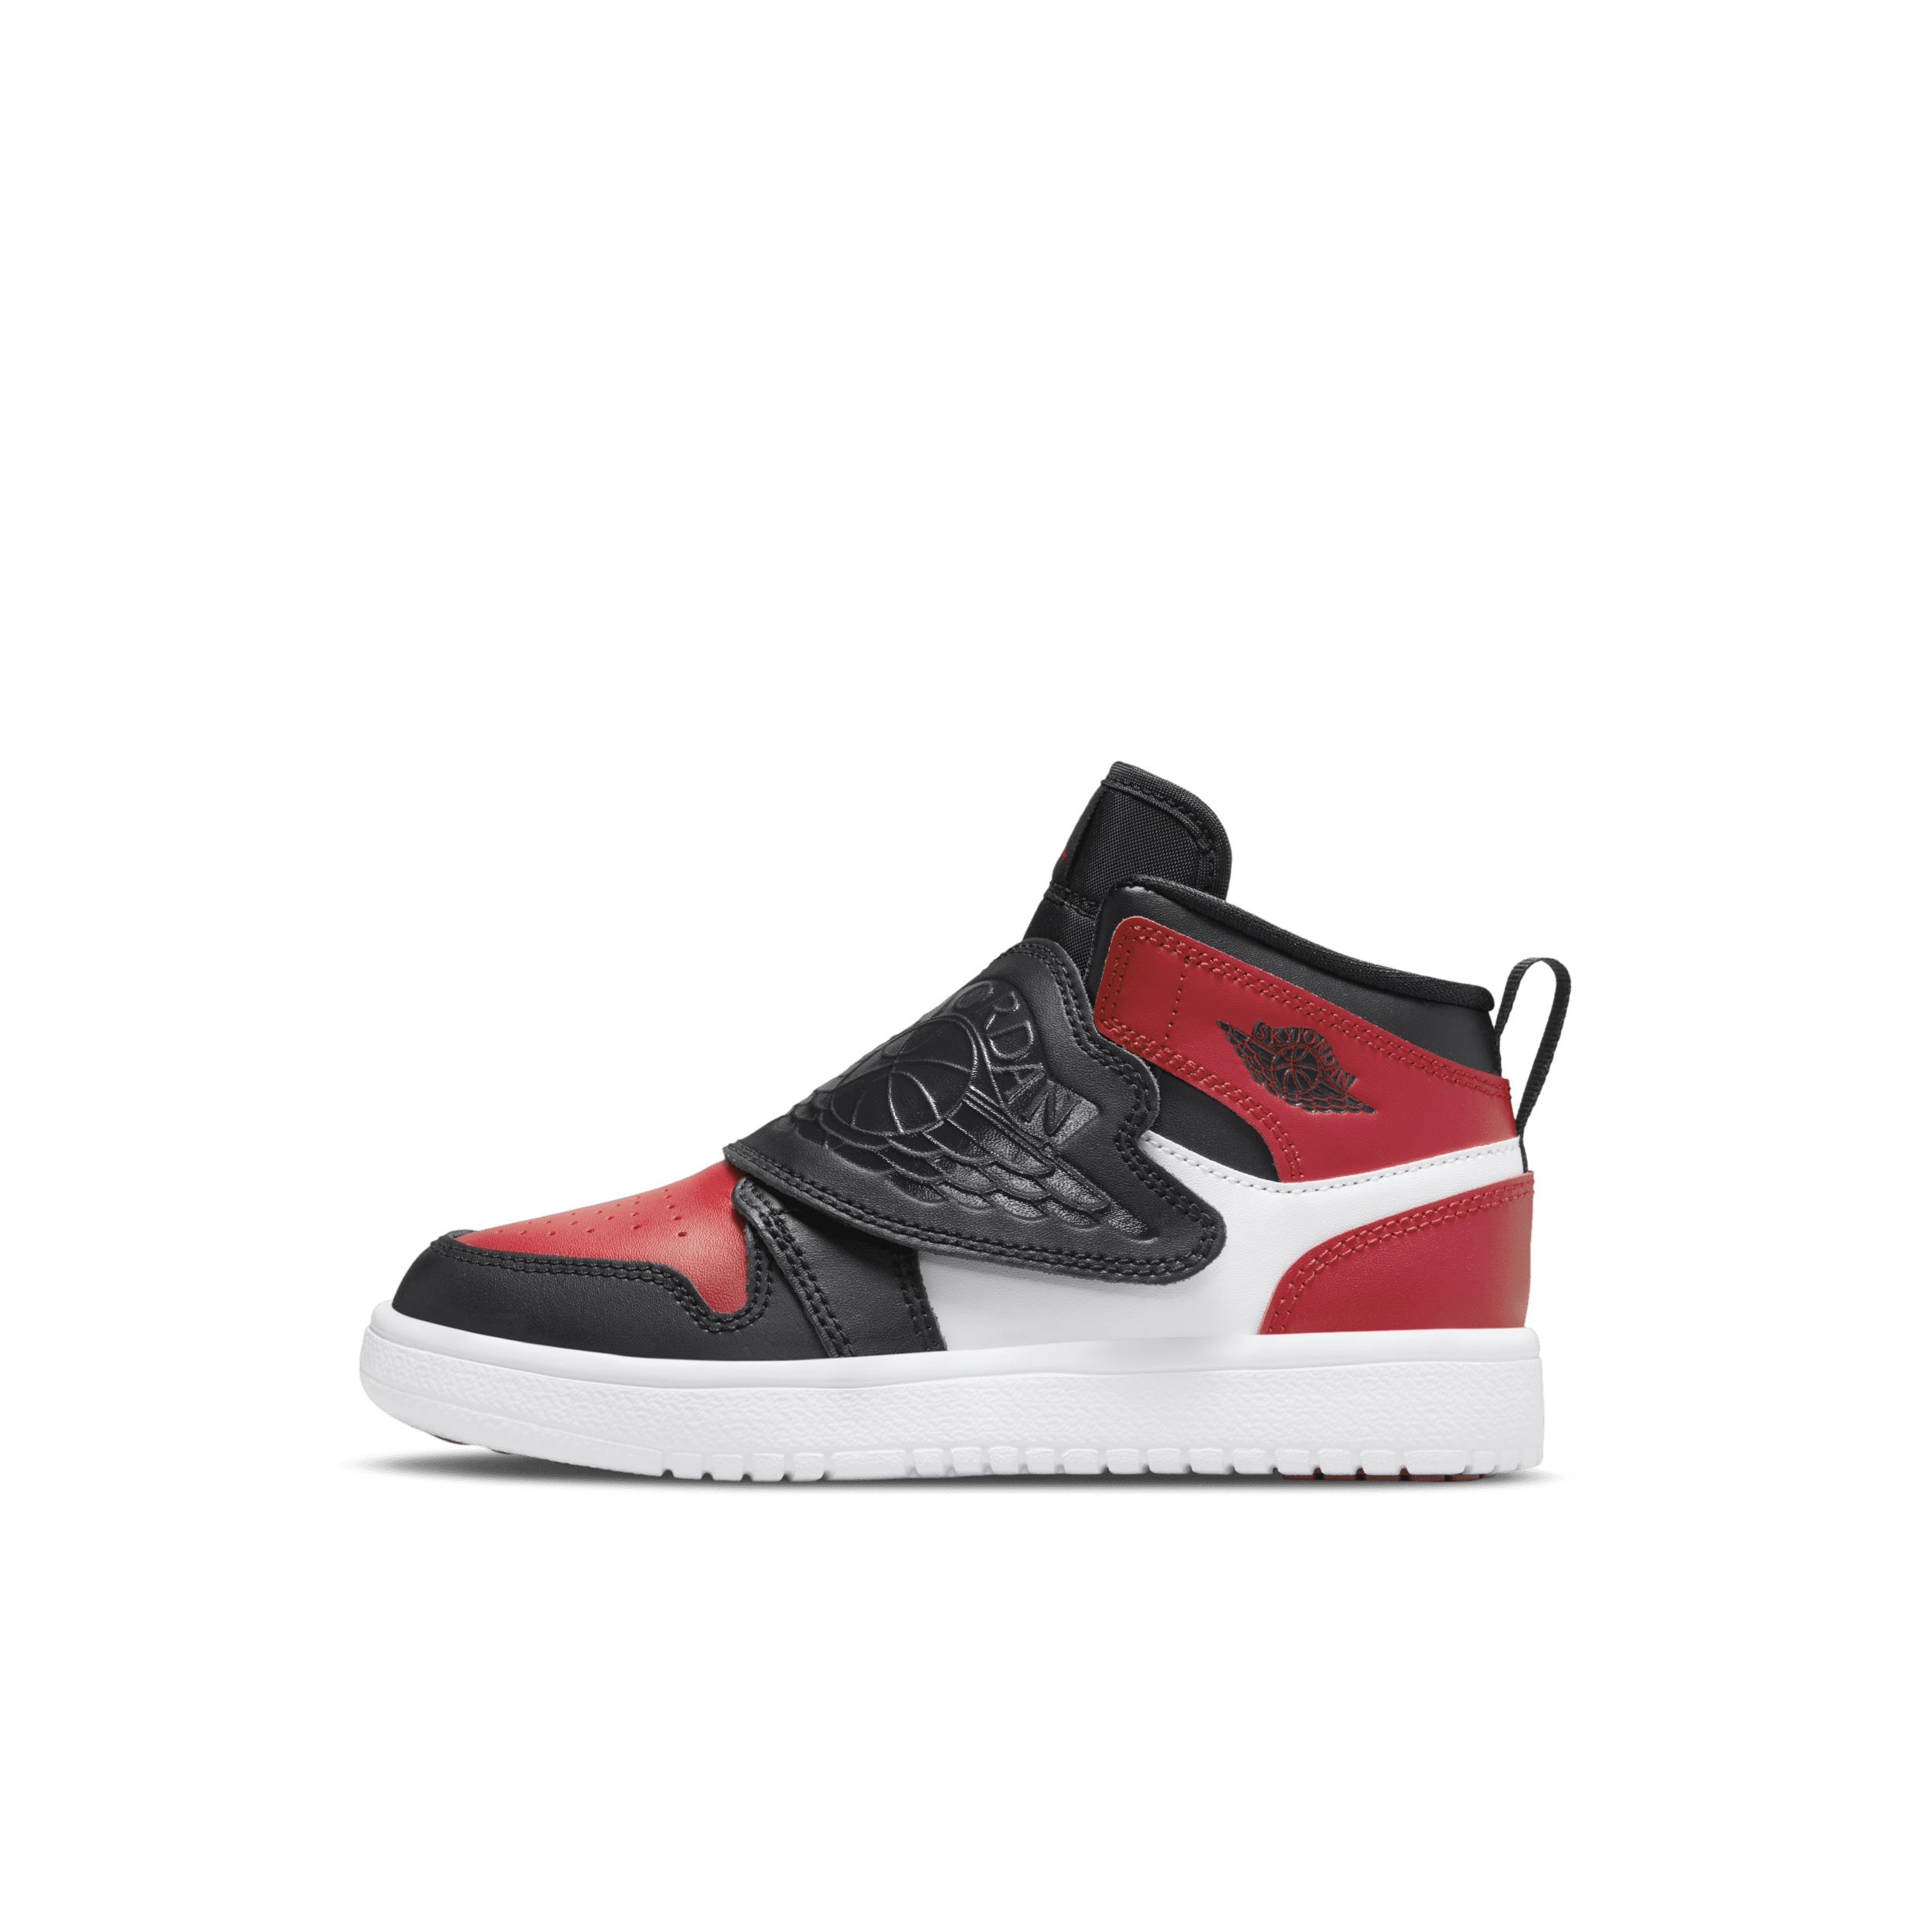 Nike Sky Jordan 1 Zapatillas - Niño/a pequeño/a - Negro